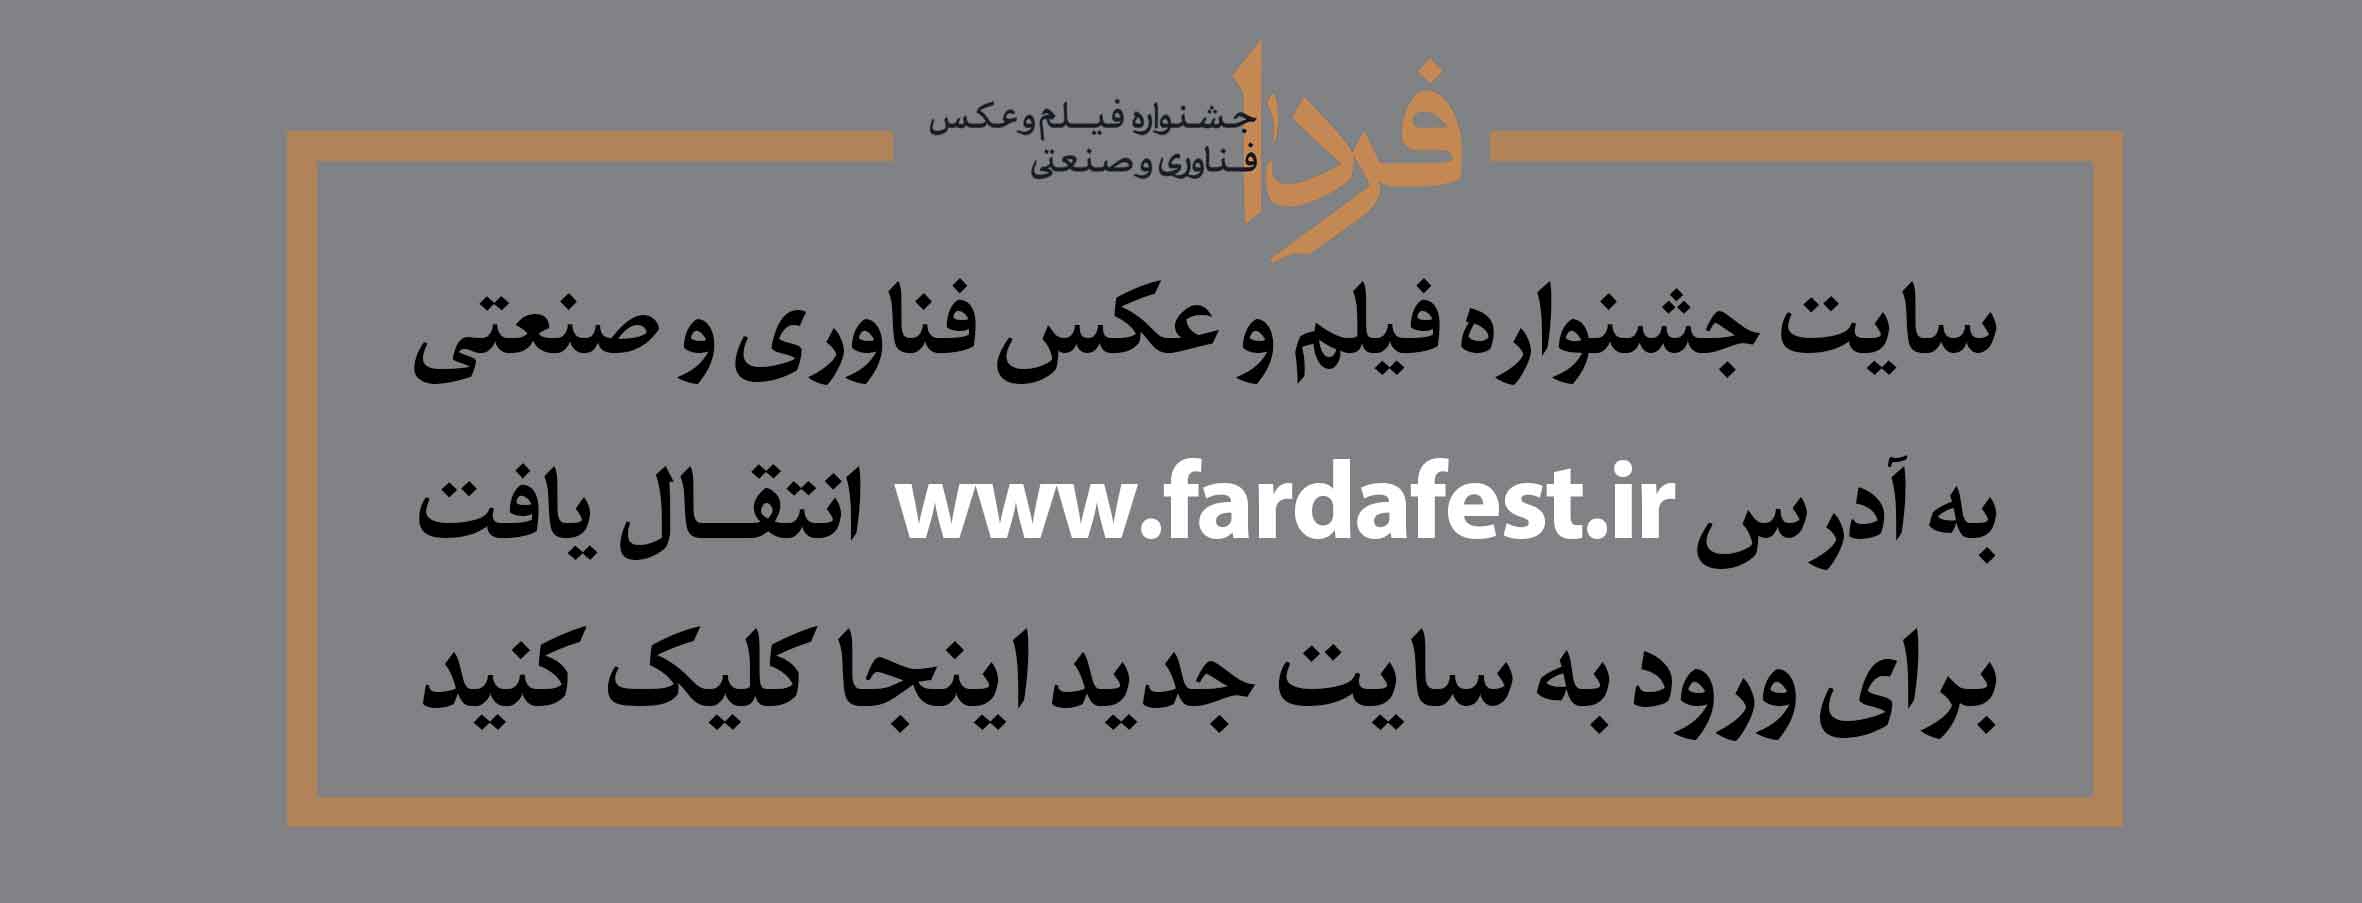 انتقال سایت جشنواره فیلم و عکس فناوری و صنععتی - فردا 